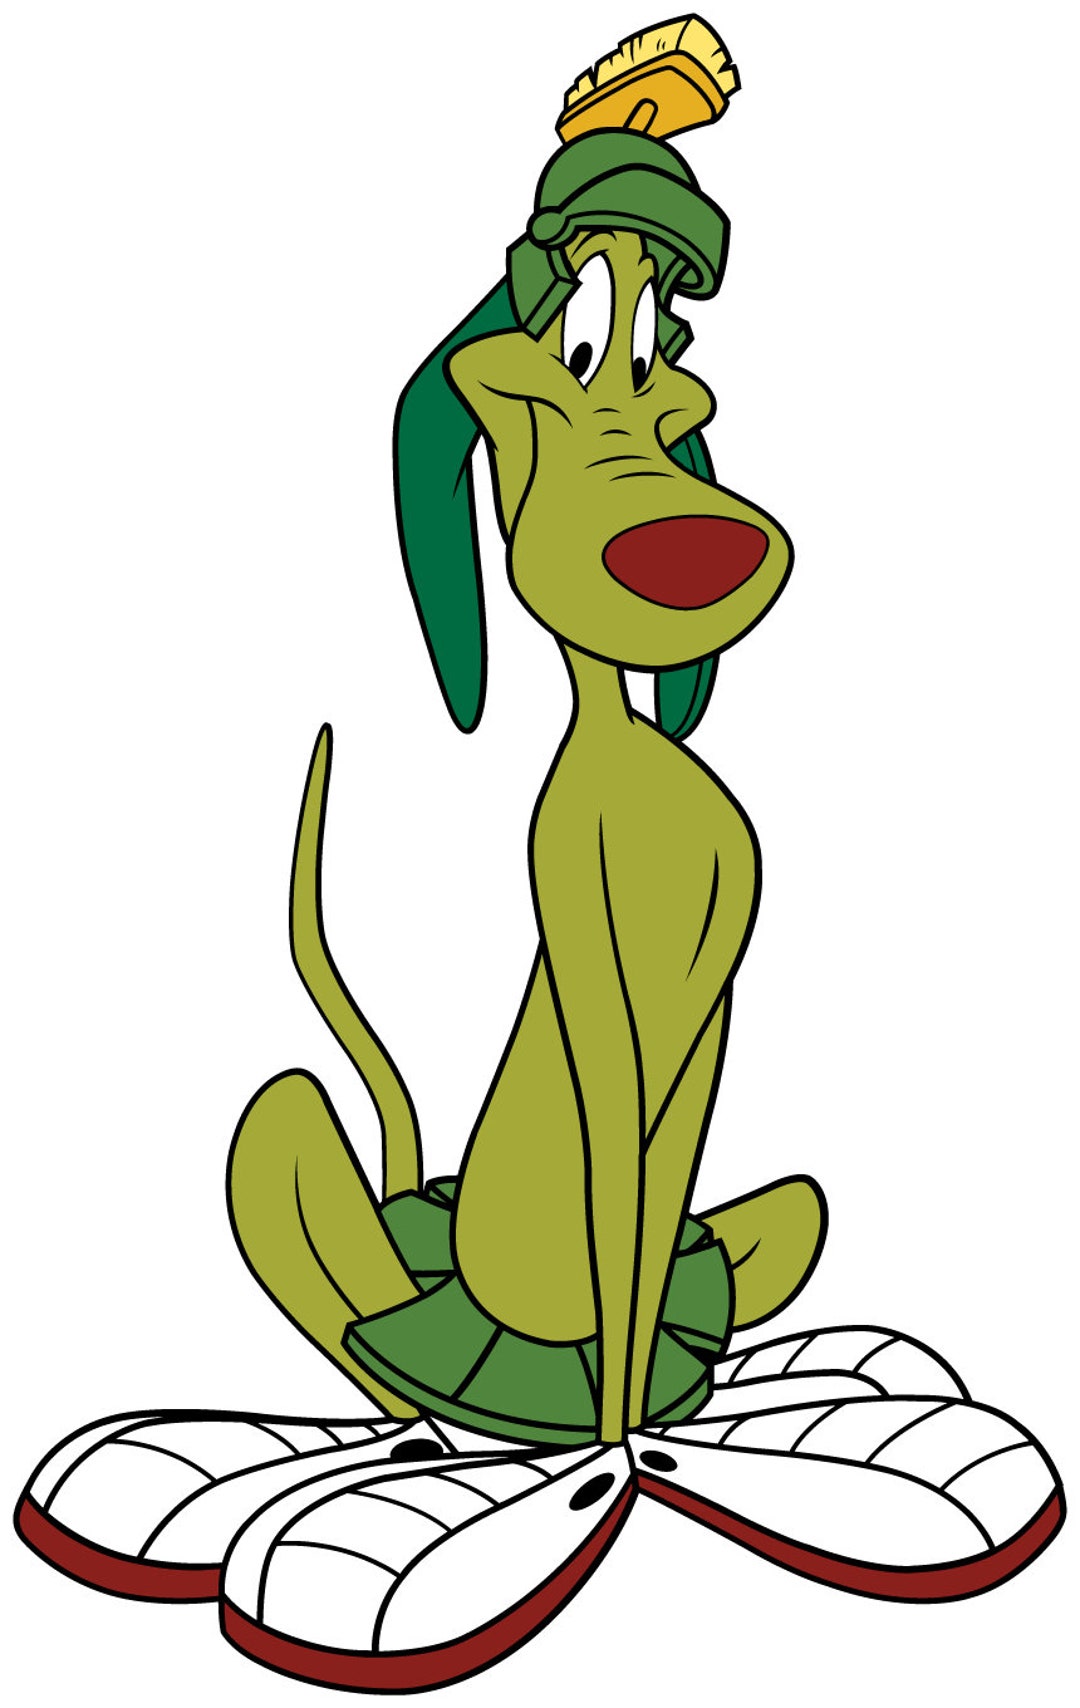 Marvin the Martian Dog Sticker / K-9 Looney Tunes Alien Dog - Etsy ...